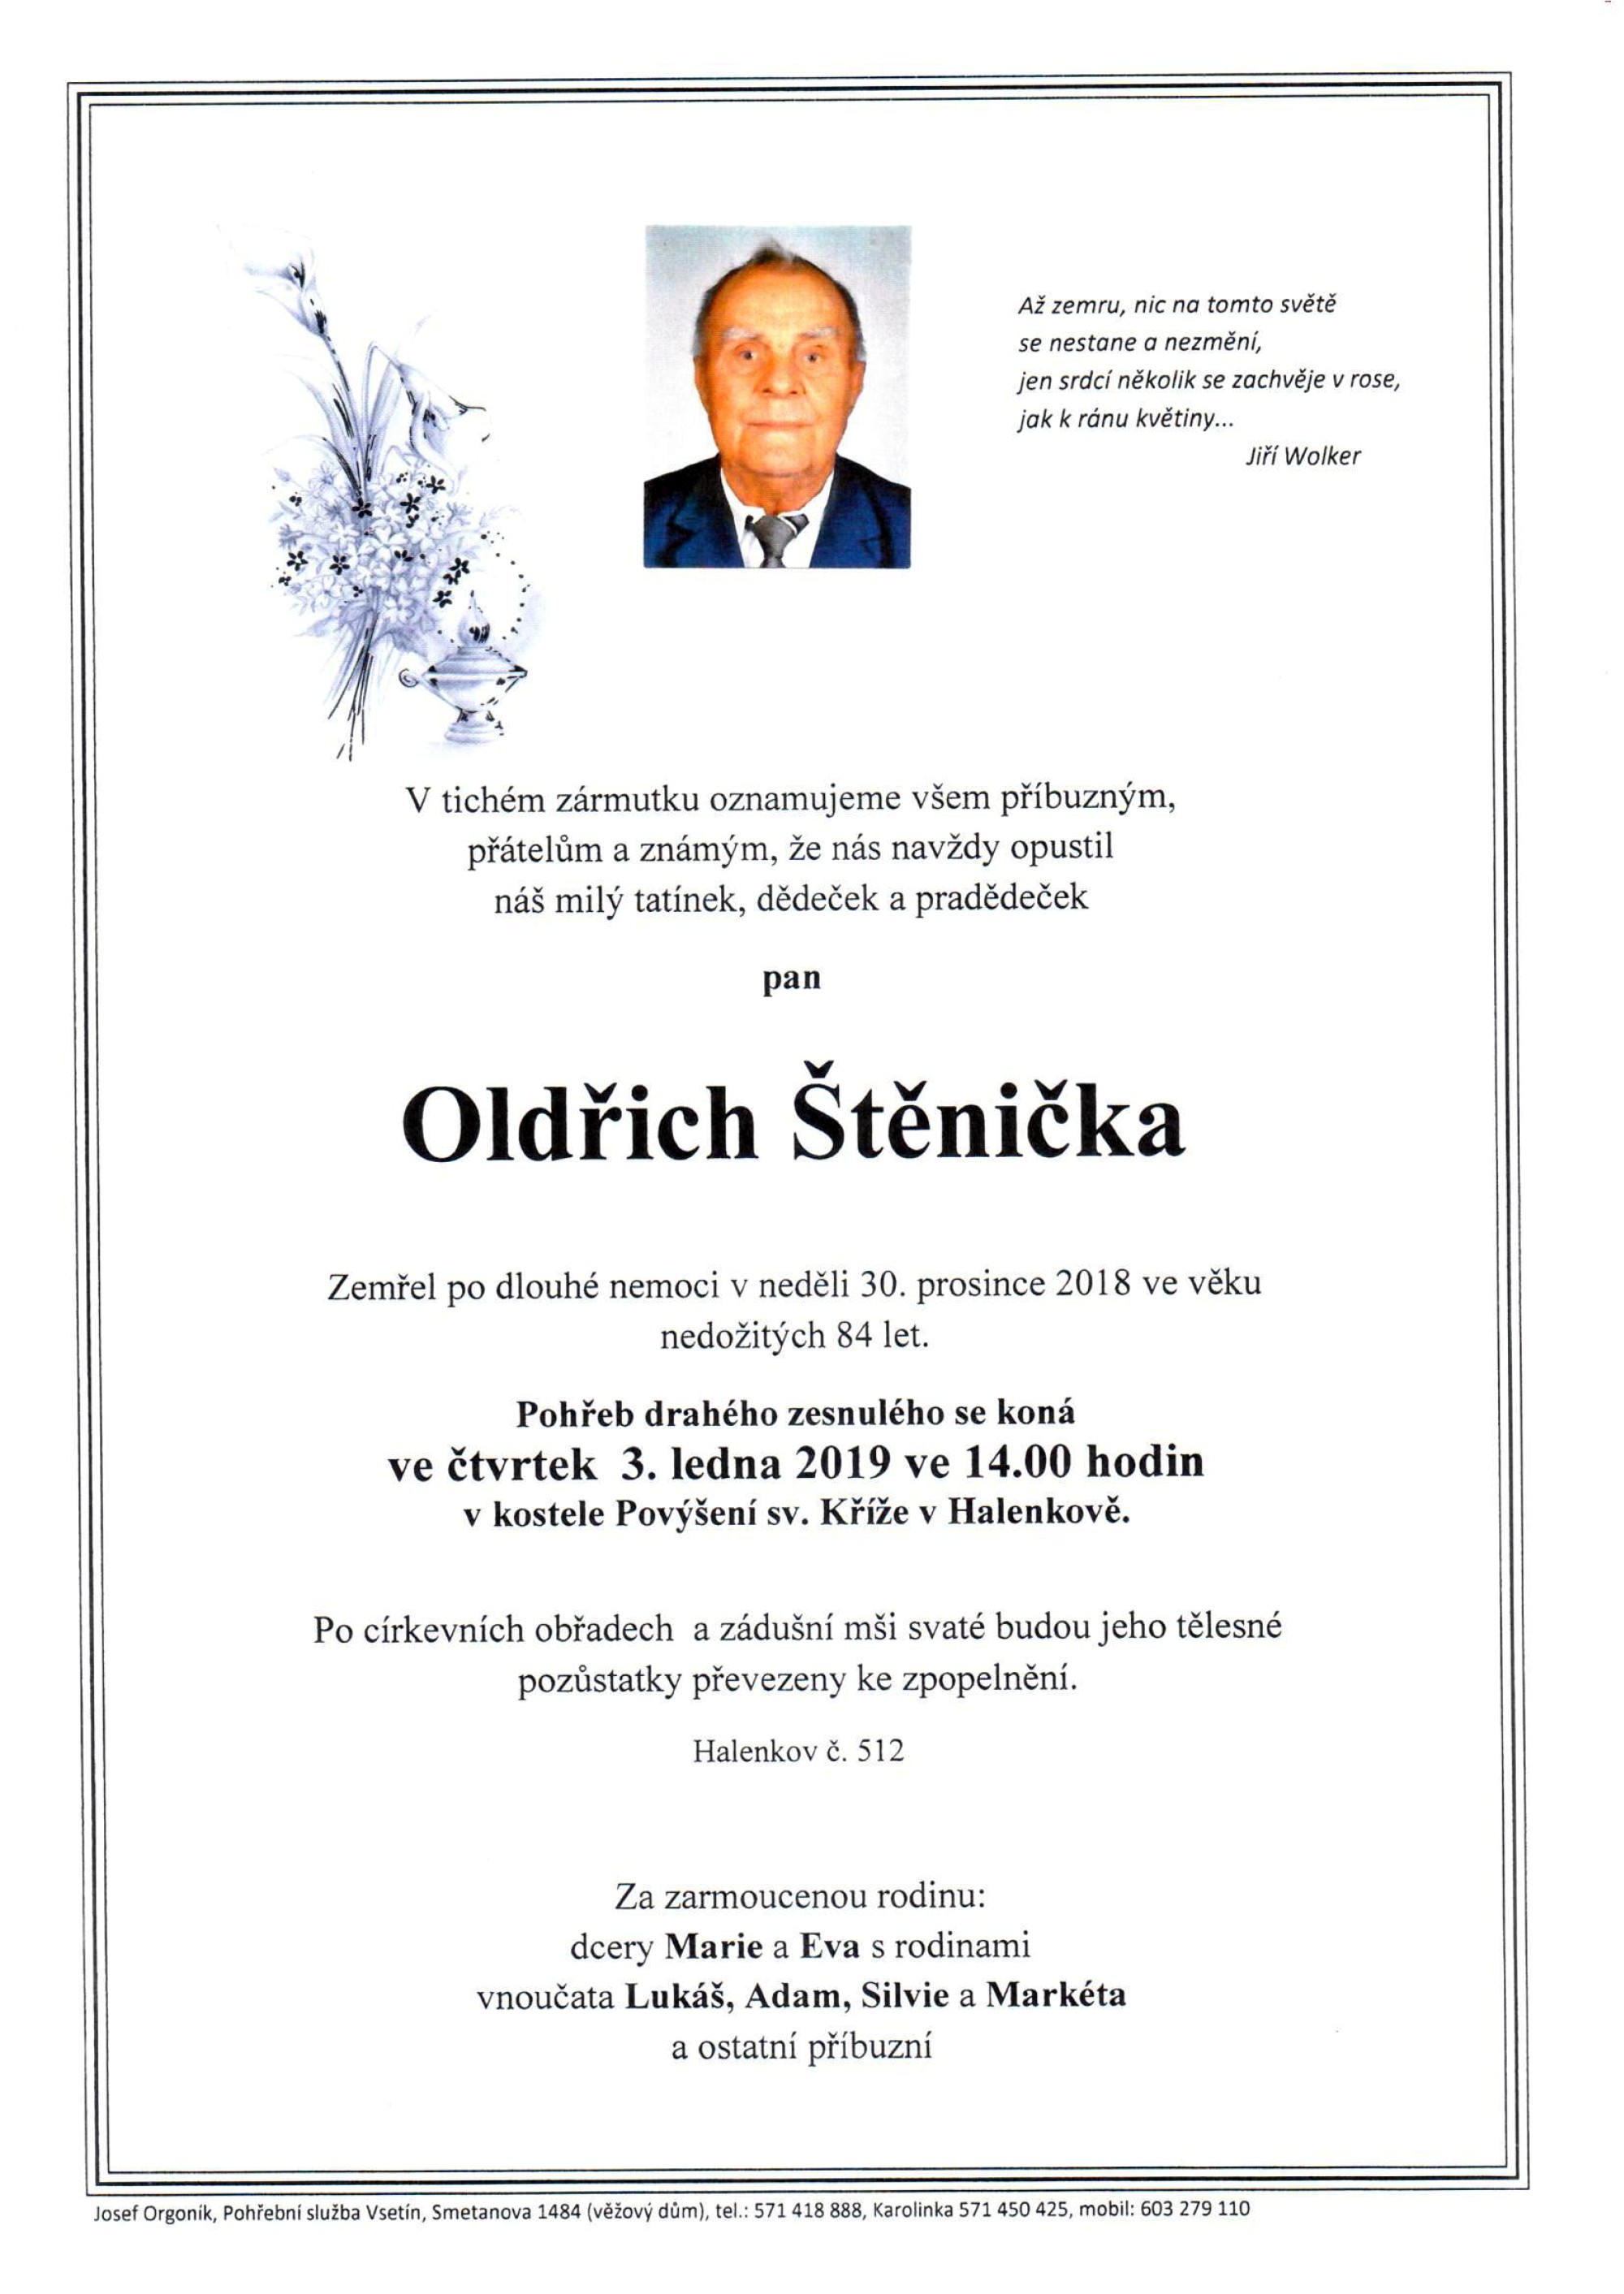 Oldřich Štěnička